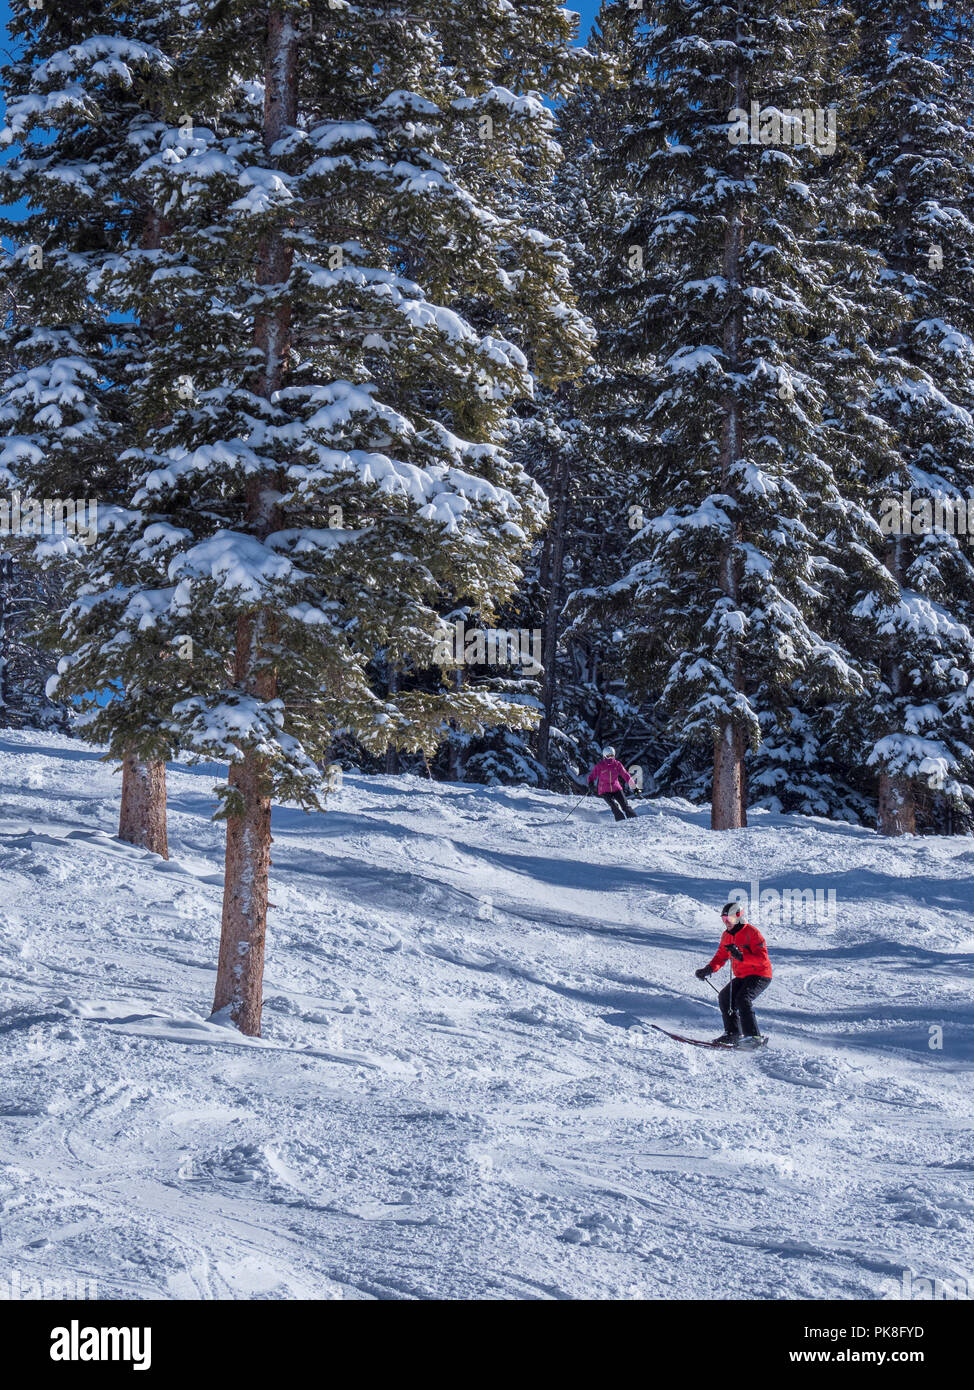 La piste de ski skieurs Star, hiver, Blue Sky Basin, Station de Ski de Vail, Vail, Colorado. Banque D'Images